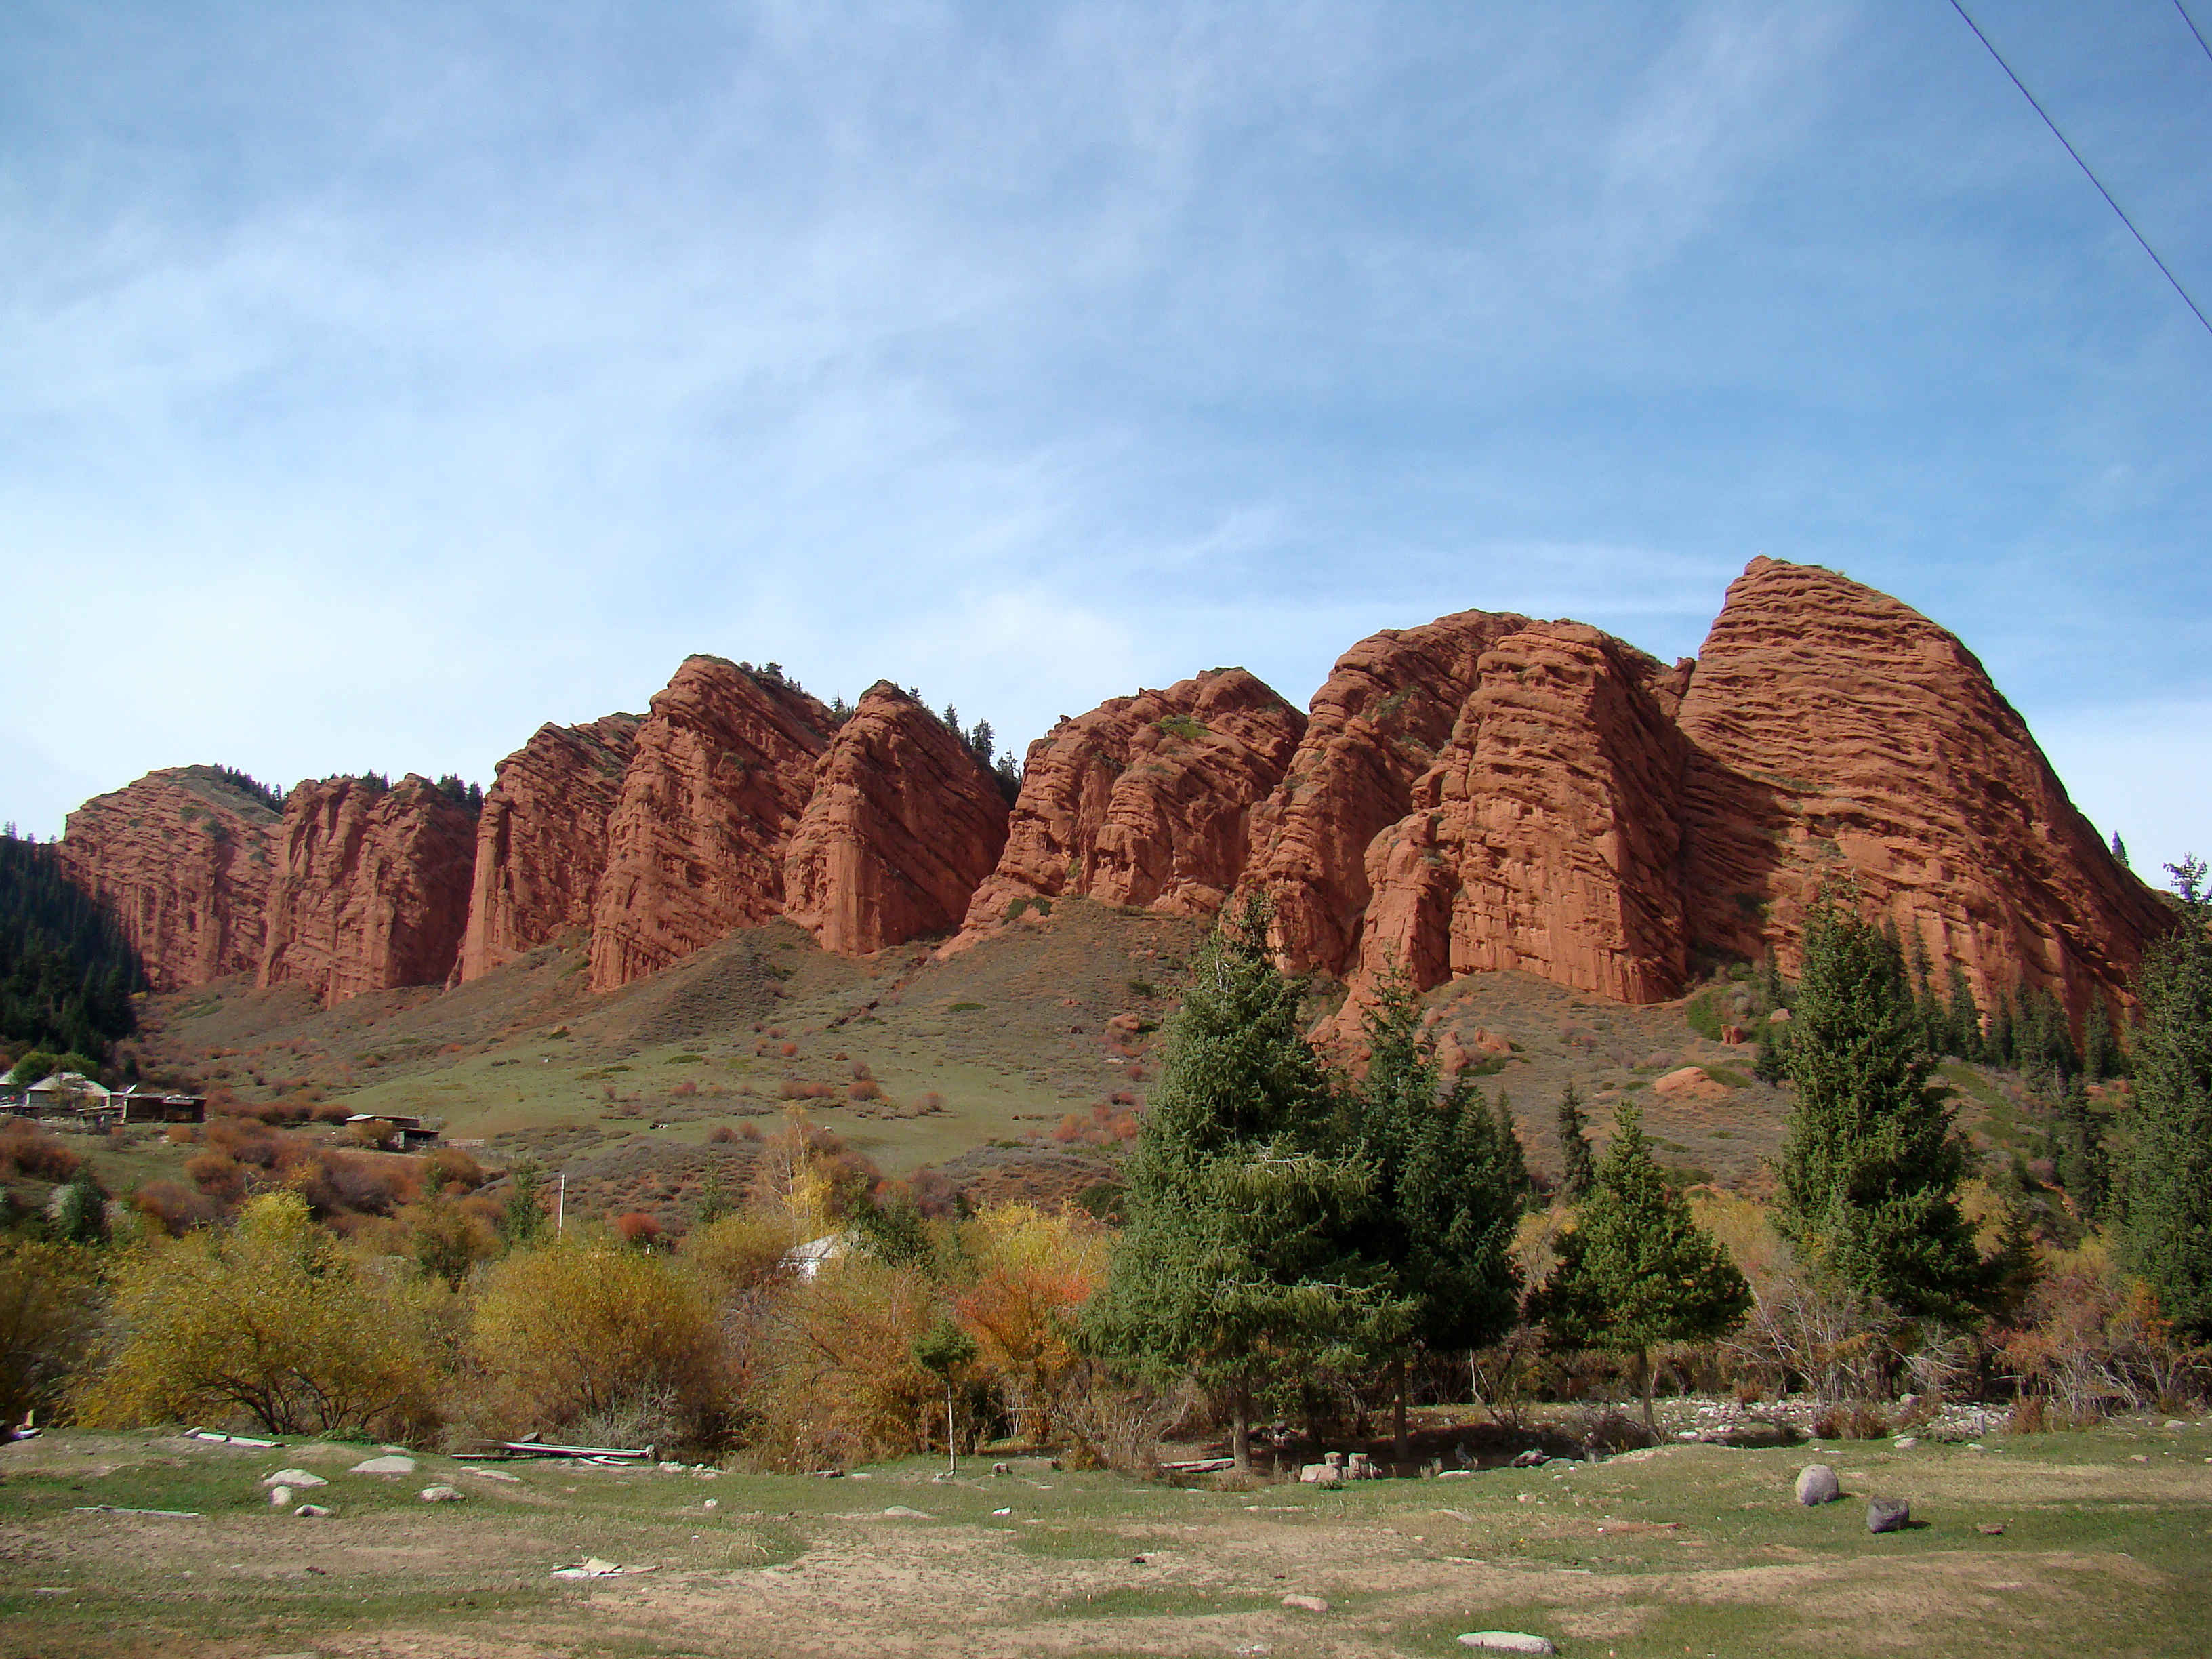 Red rocks at Jeti-Oguz